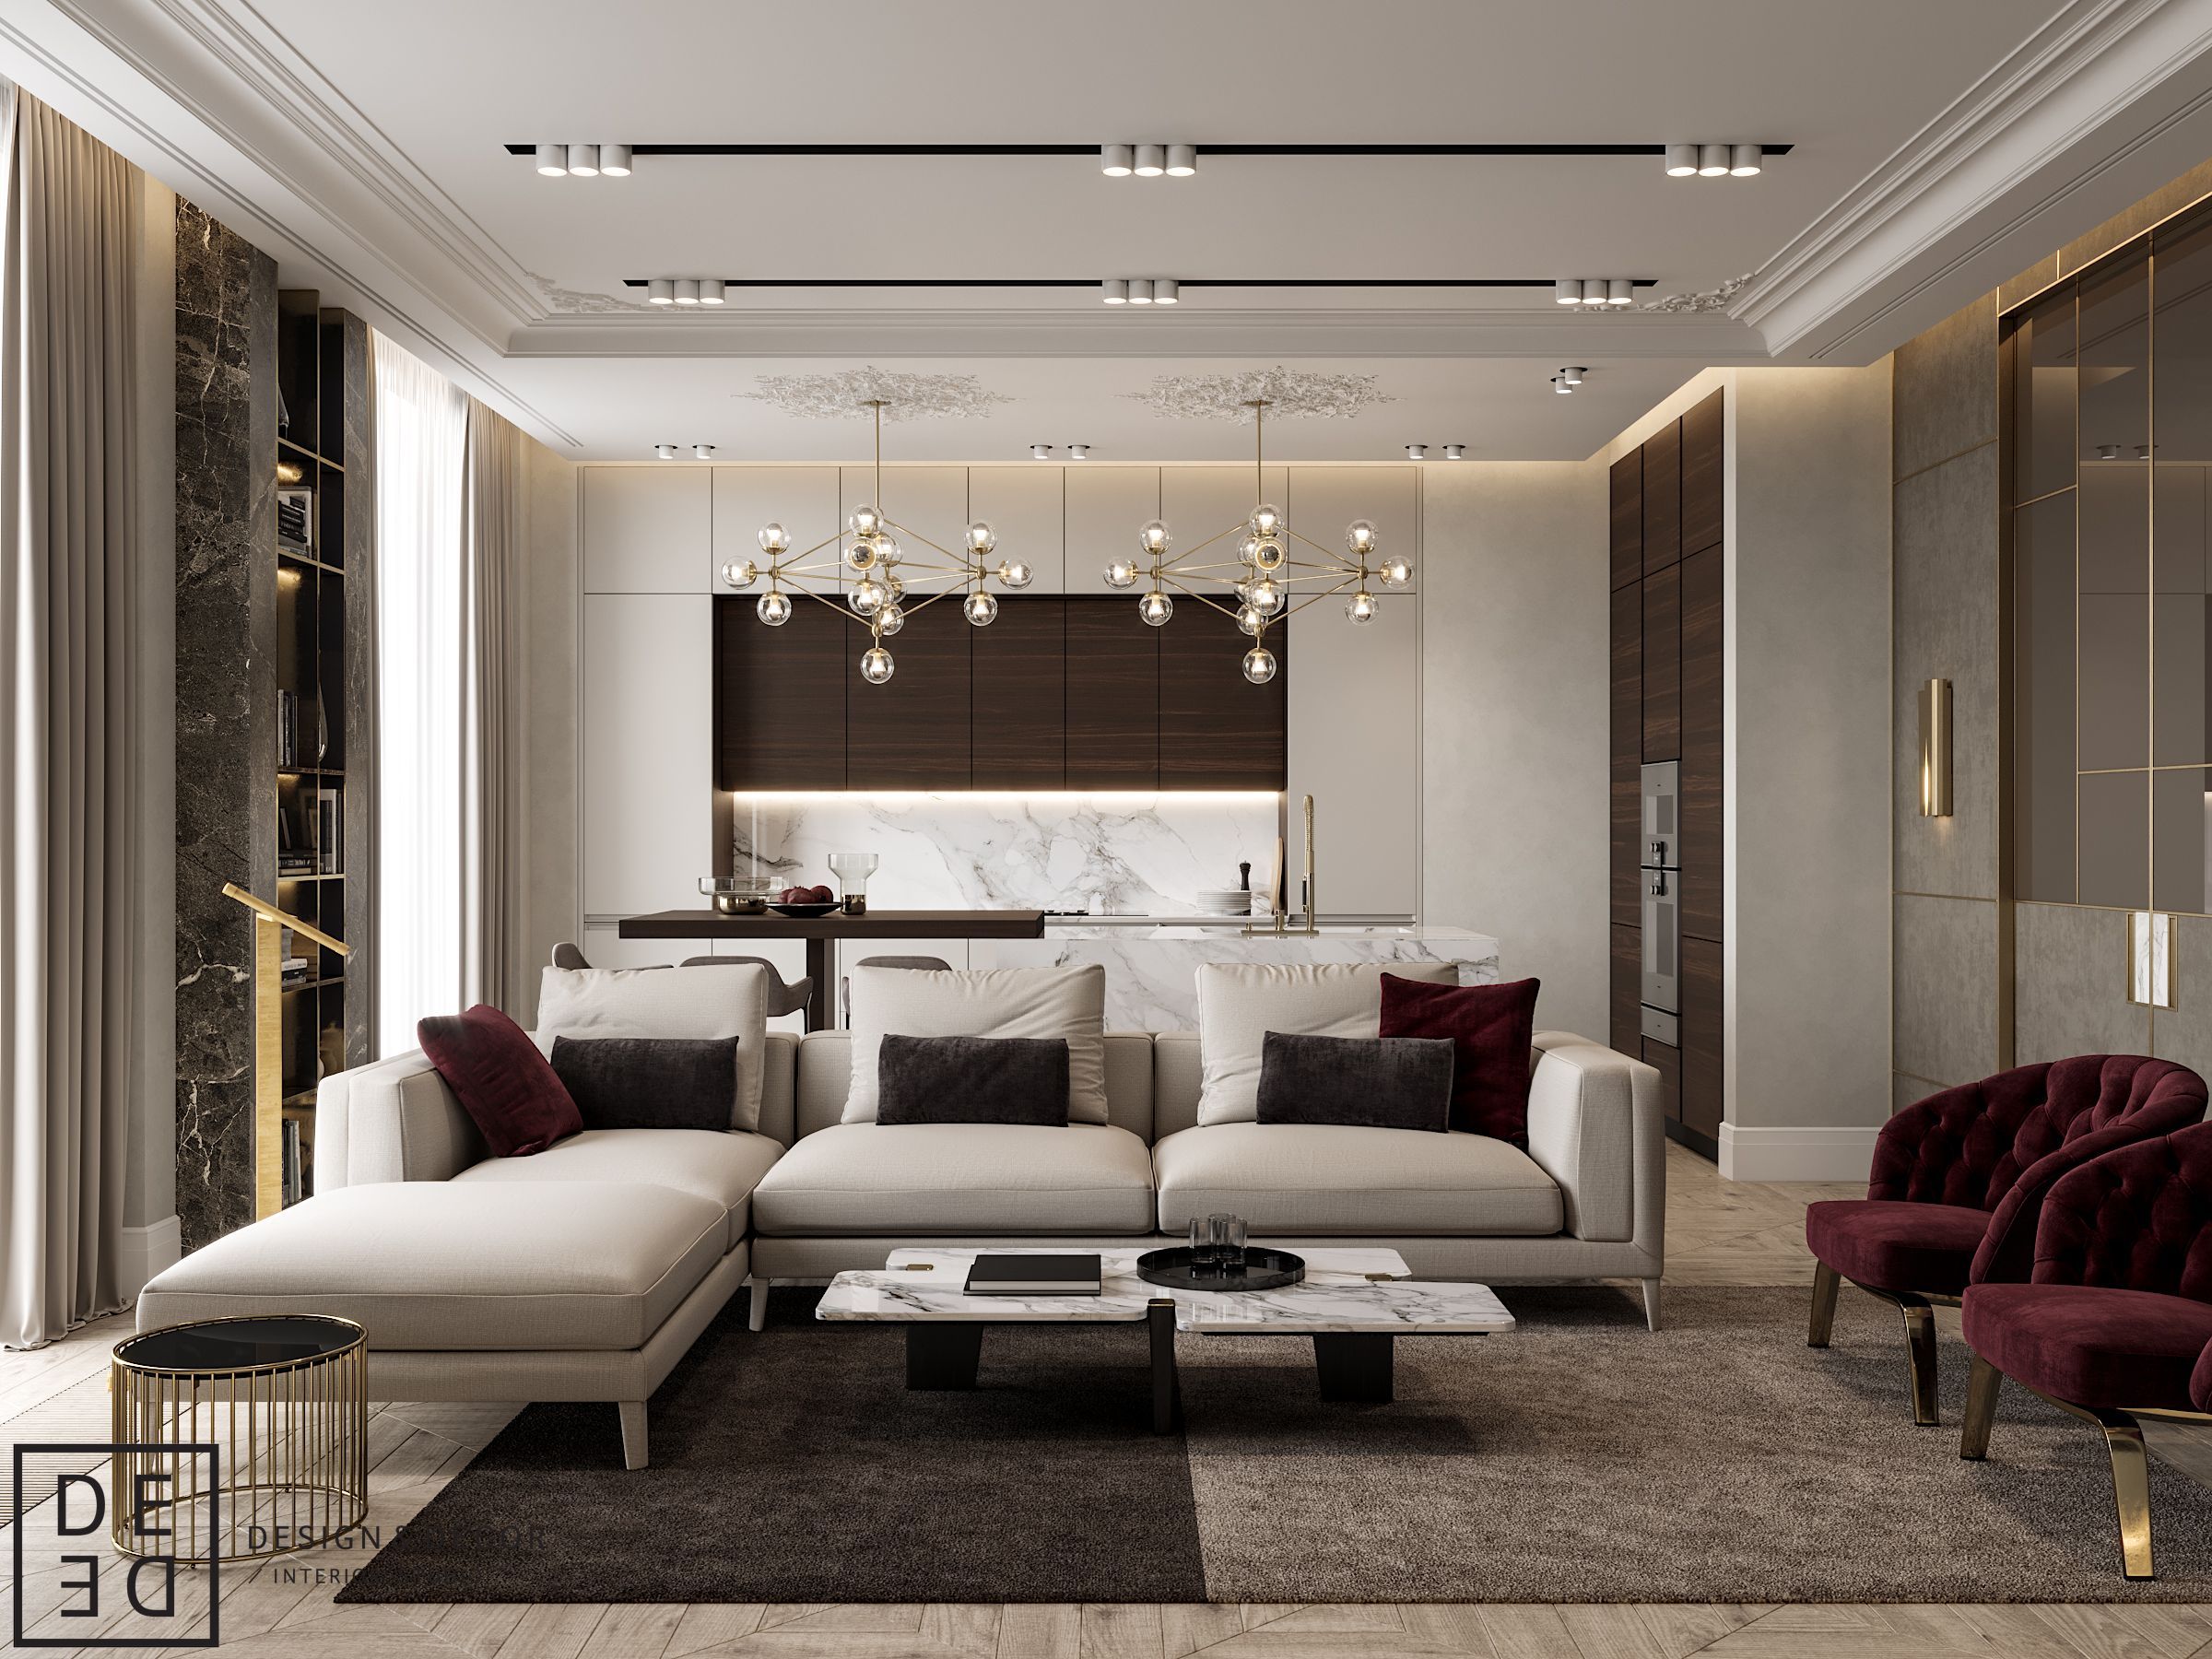 Дизайн интерьера в современном стиле: Современный стиль в интерьере квартиры и дома, особенности дизайна и фото